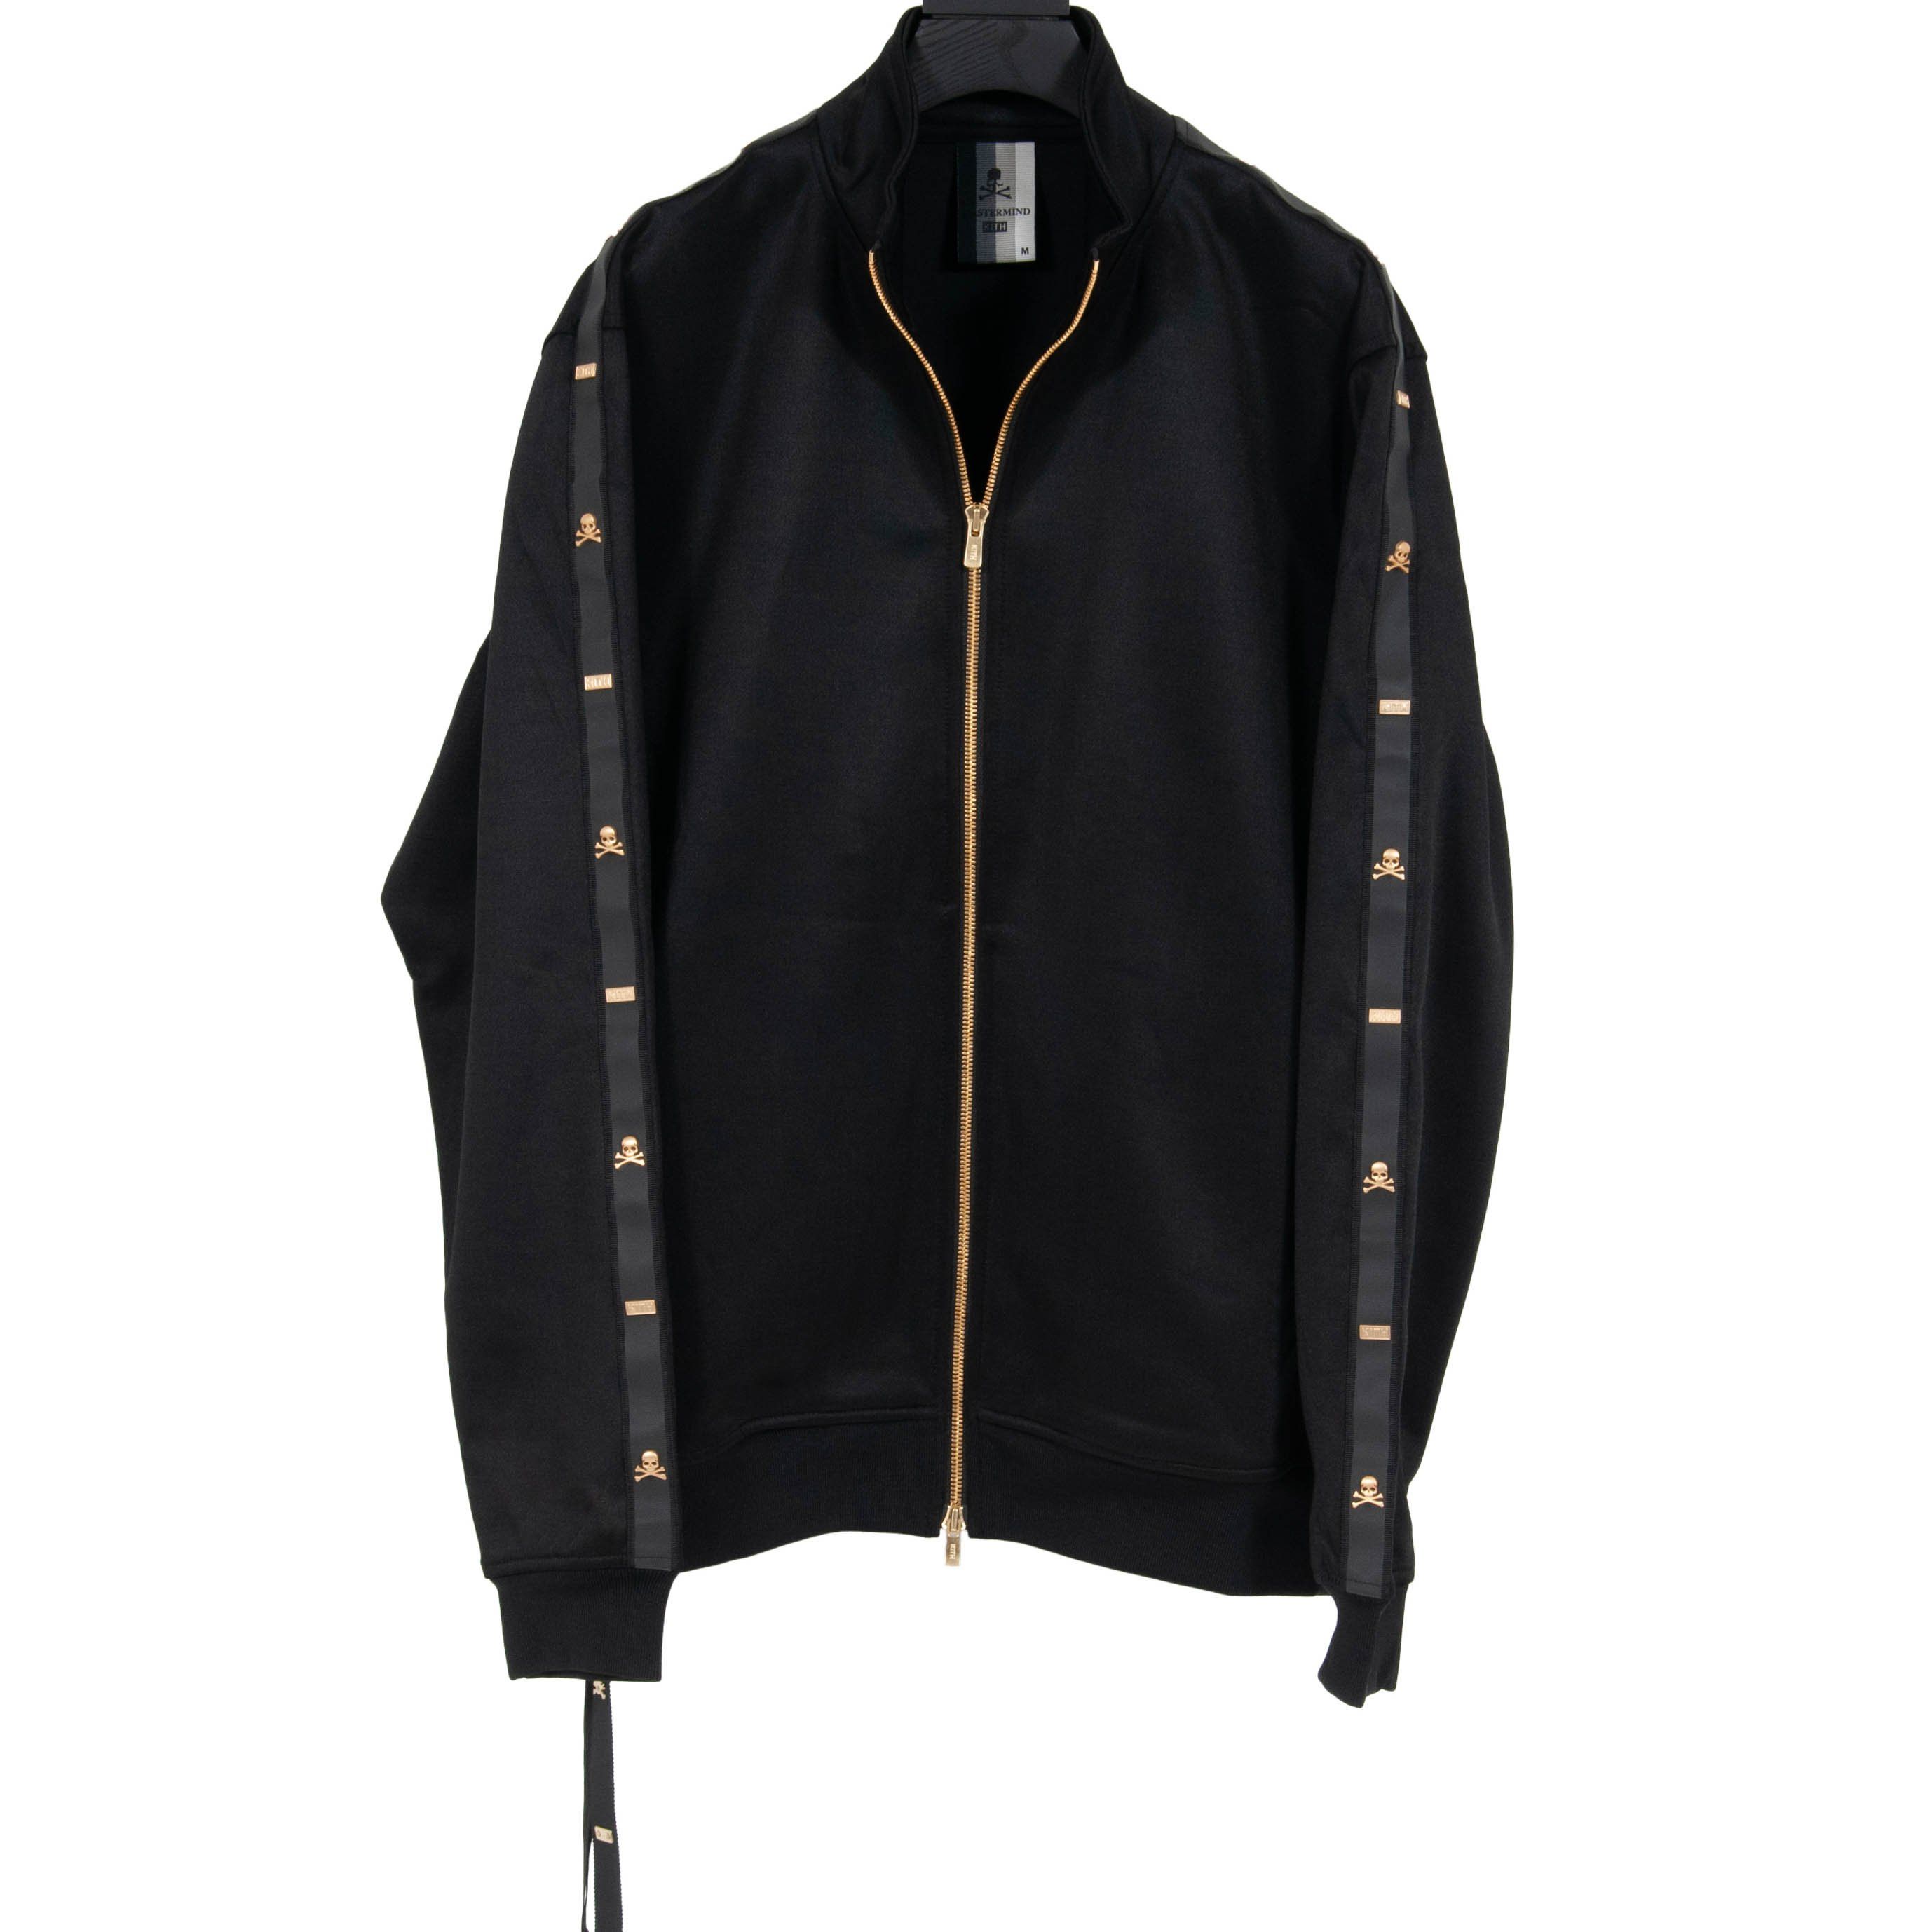 Kith Mens Mastermind Track Jacket Black Gold Size Medium Coat